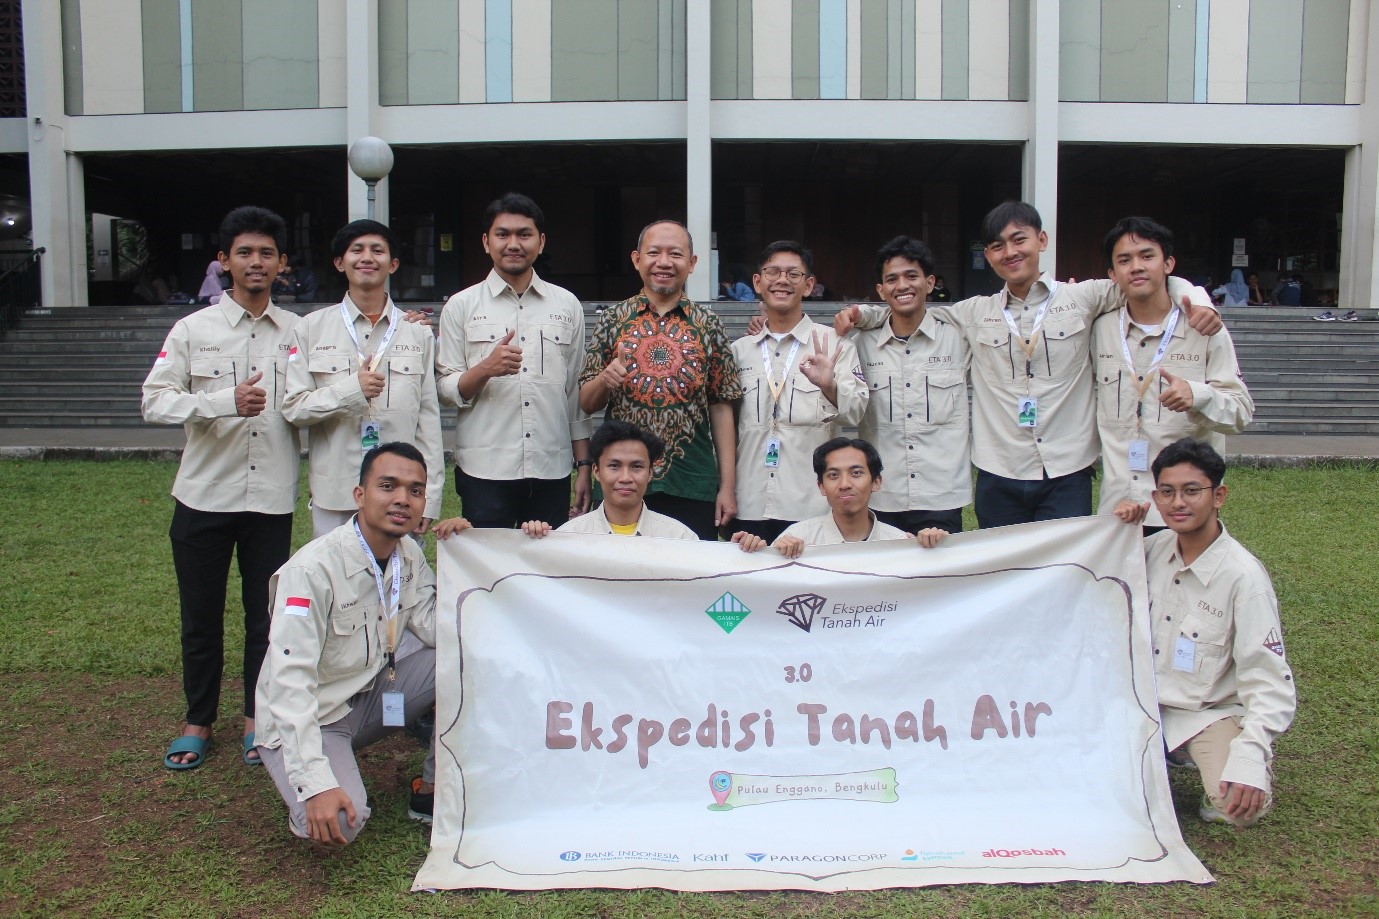 Kunjungi Daerah 3T, GAMAIS ITB Lakukan Ekspedisi Tanah Air ke Pulau Enggano Bengkulu